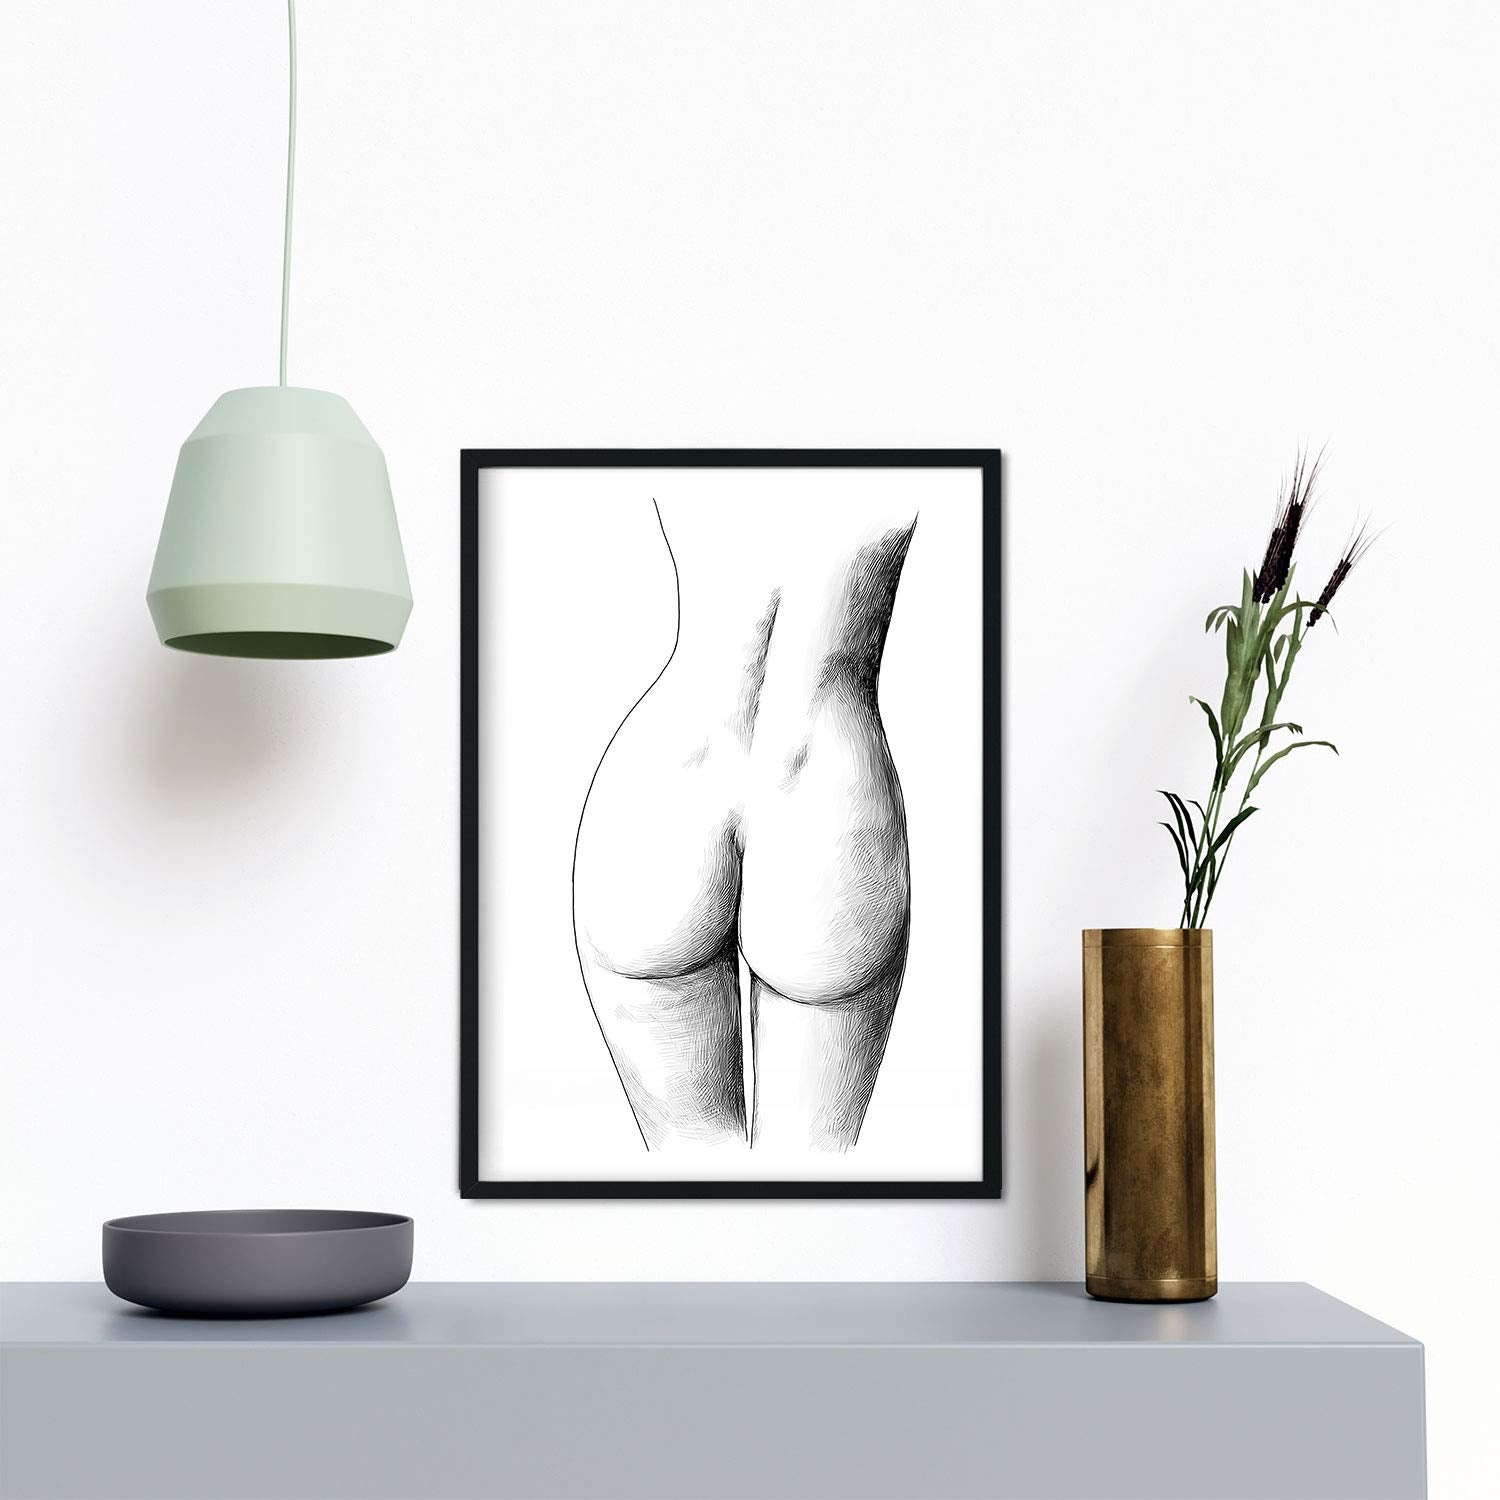 Set de posters eróticos. Láminas Frontal pecho y Culo dibujadas con imágenes sensuales del cuerpo femenino.-Artwork-Nacnic-Nacnic Estudio SL